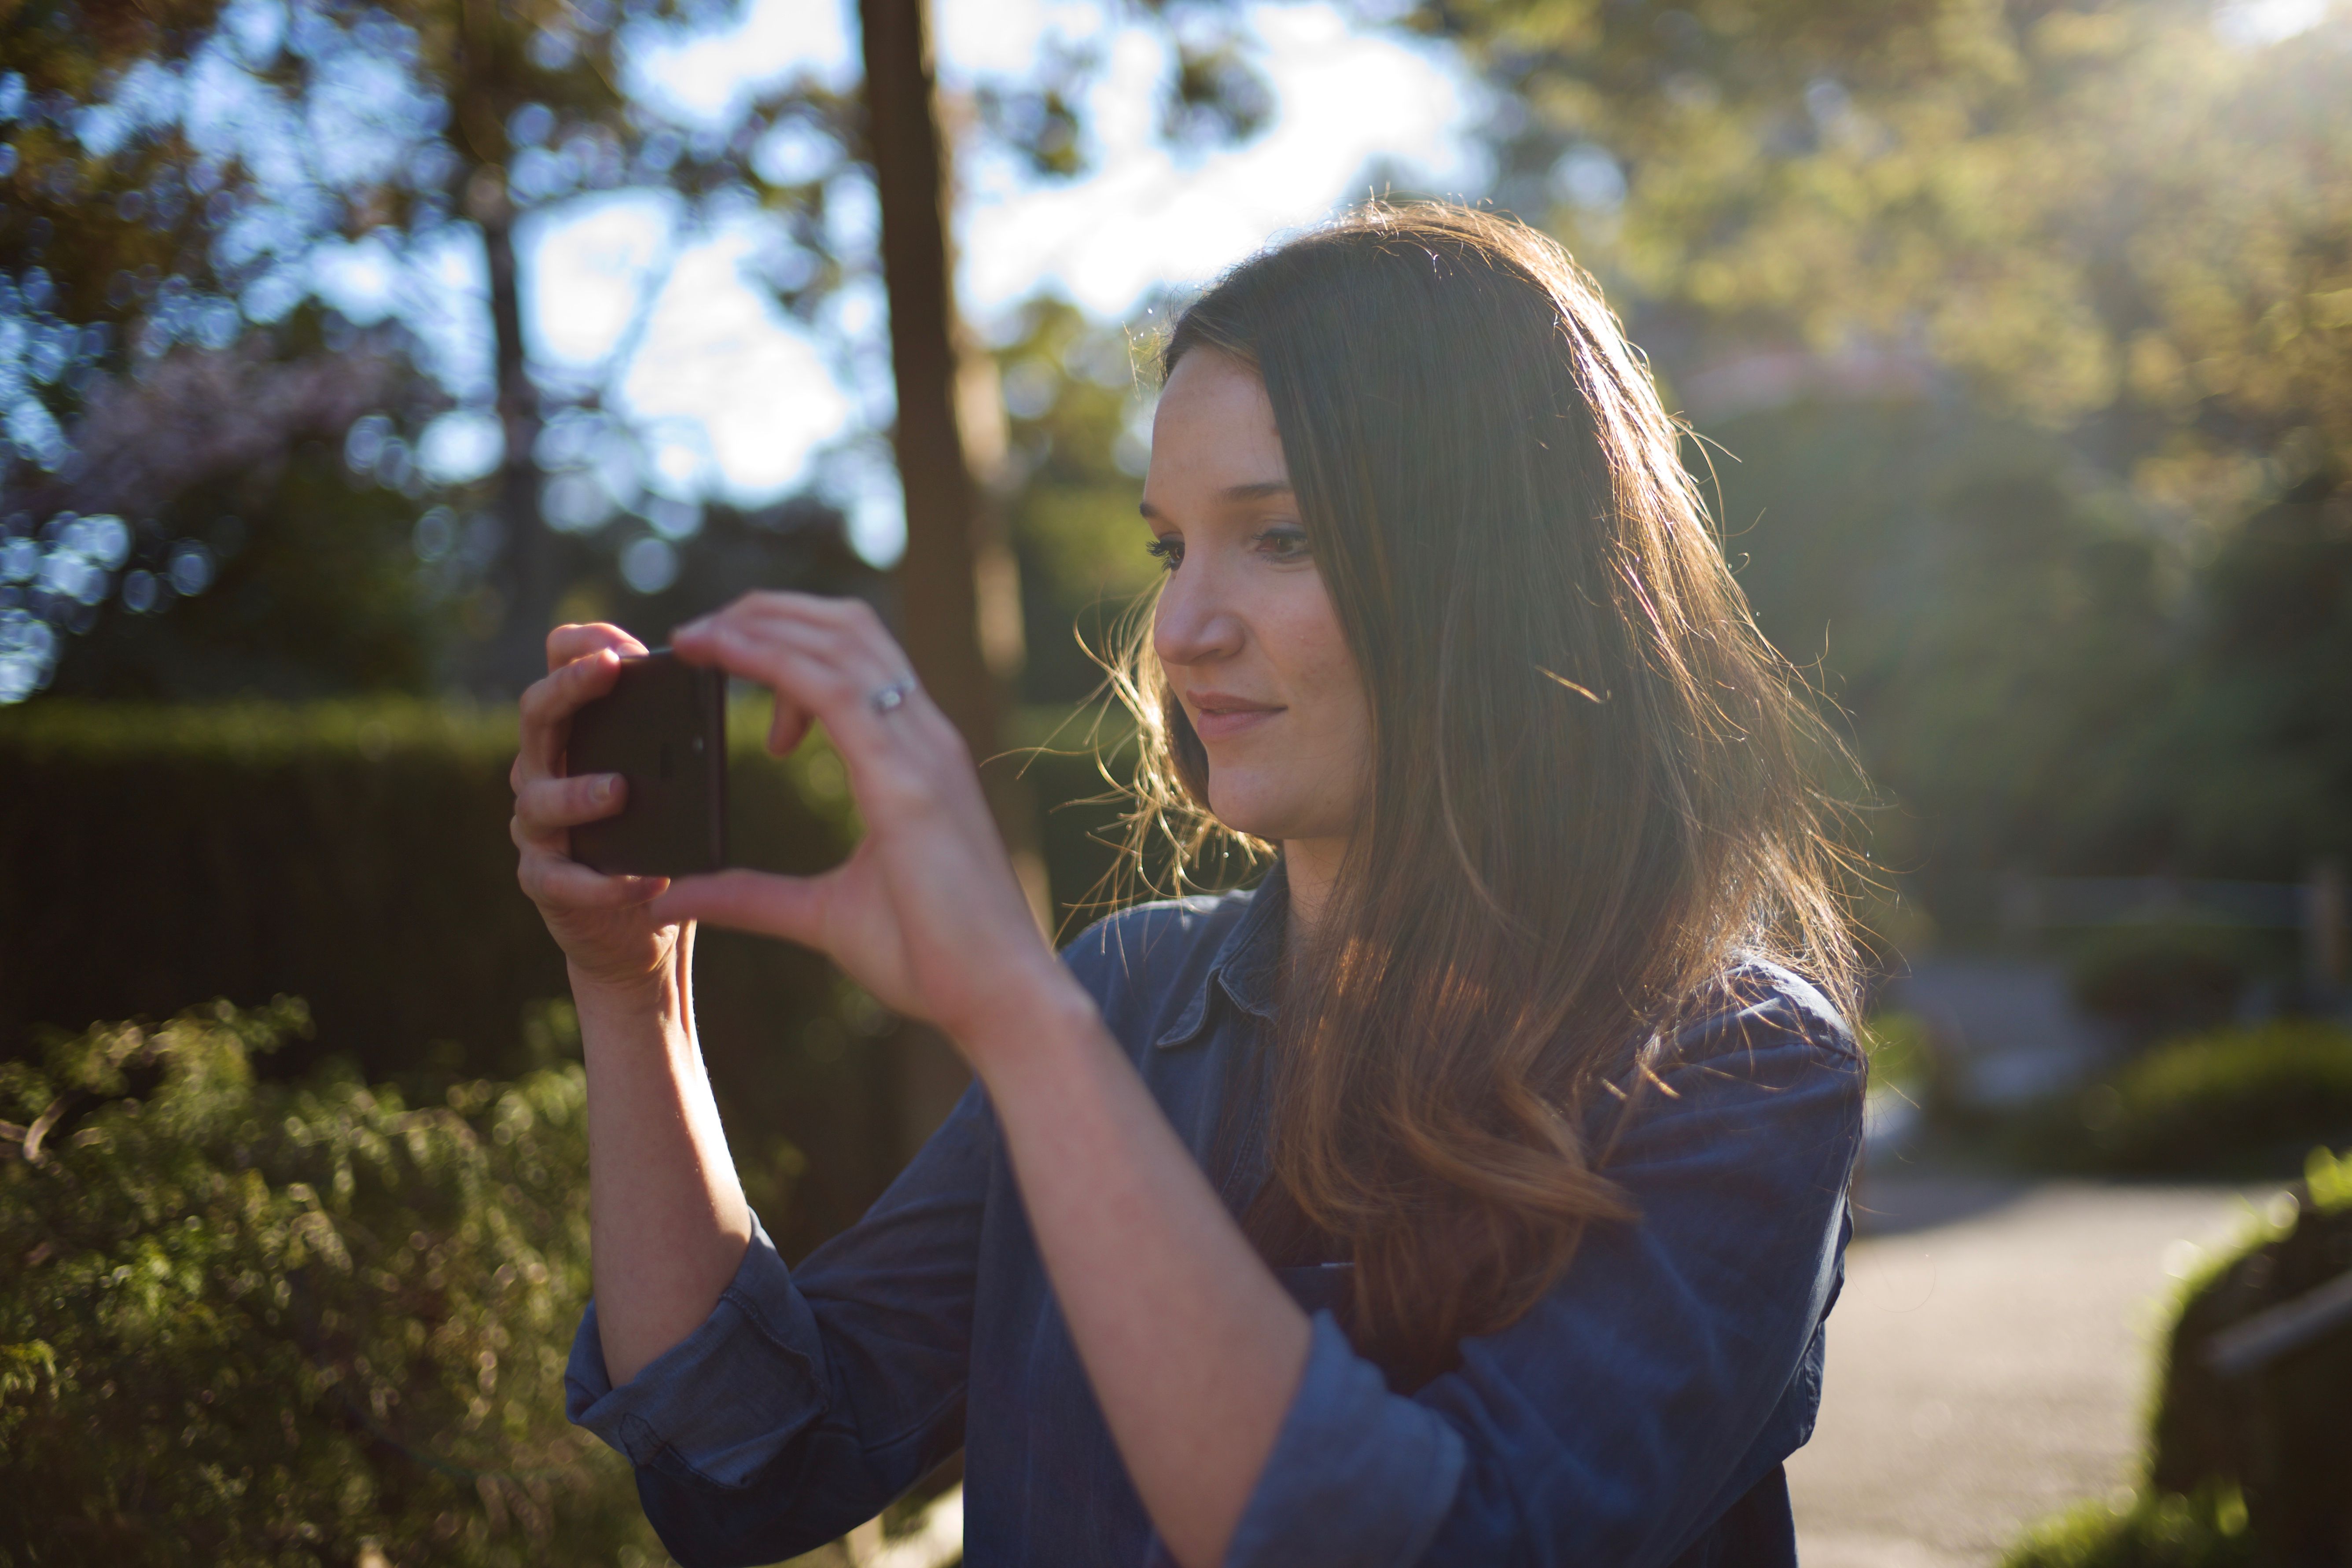 Kinh nghiệm giúp quay video bằng iPhone và các smartphone đẹp hơn